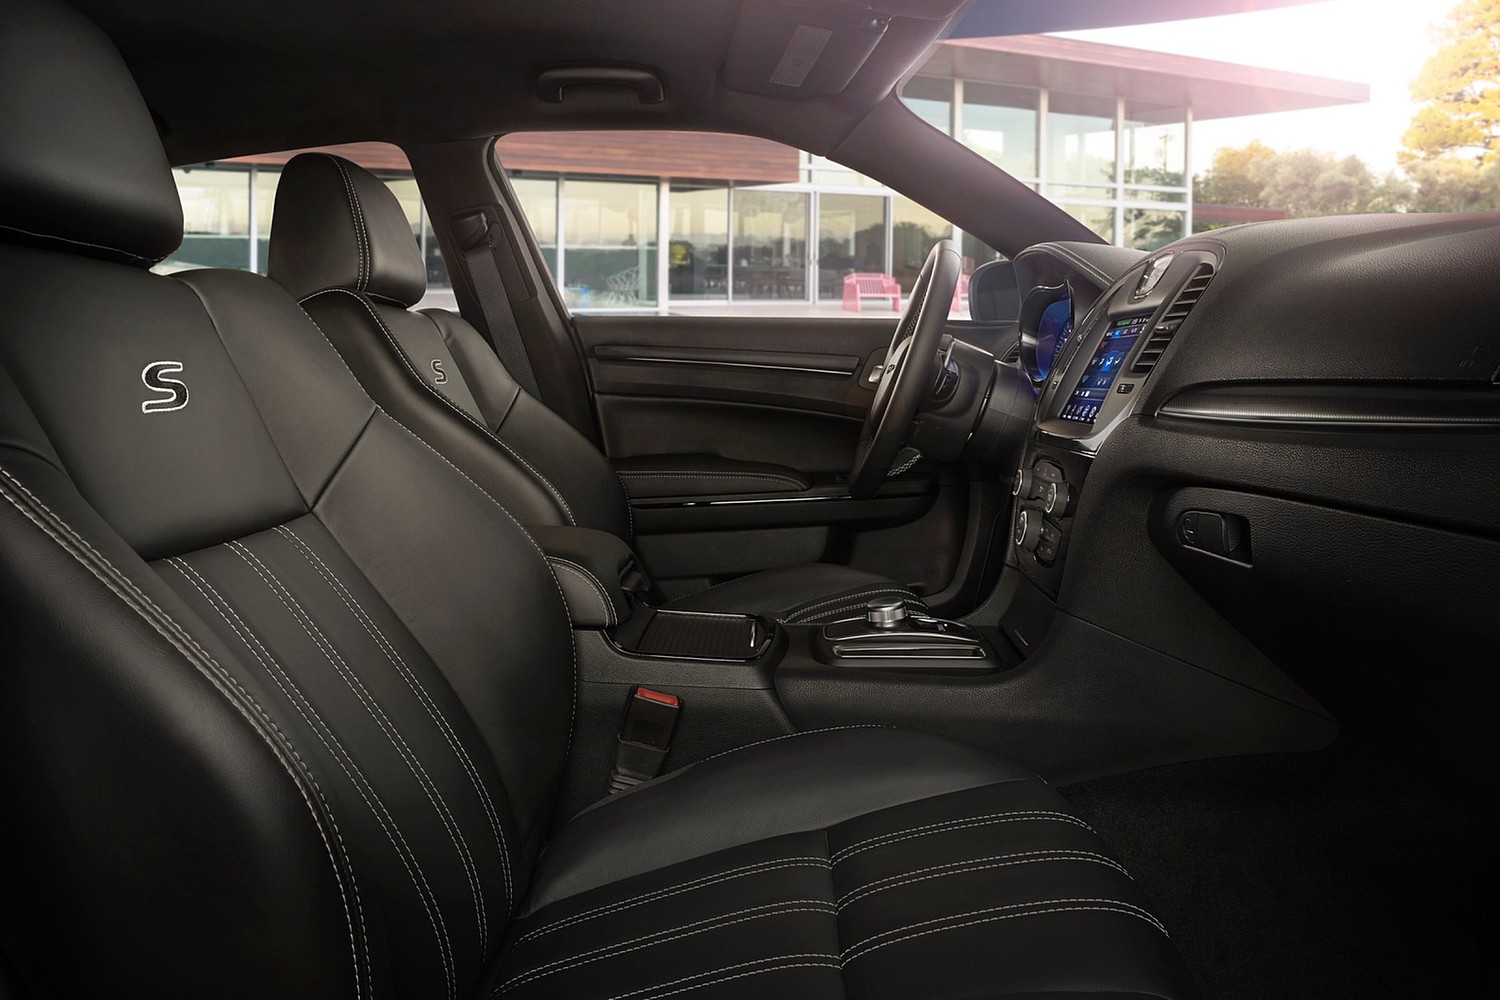 2015 Chrysler 300 S Sedan Interior